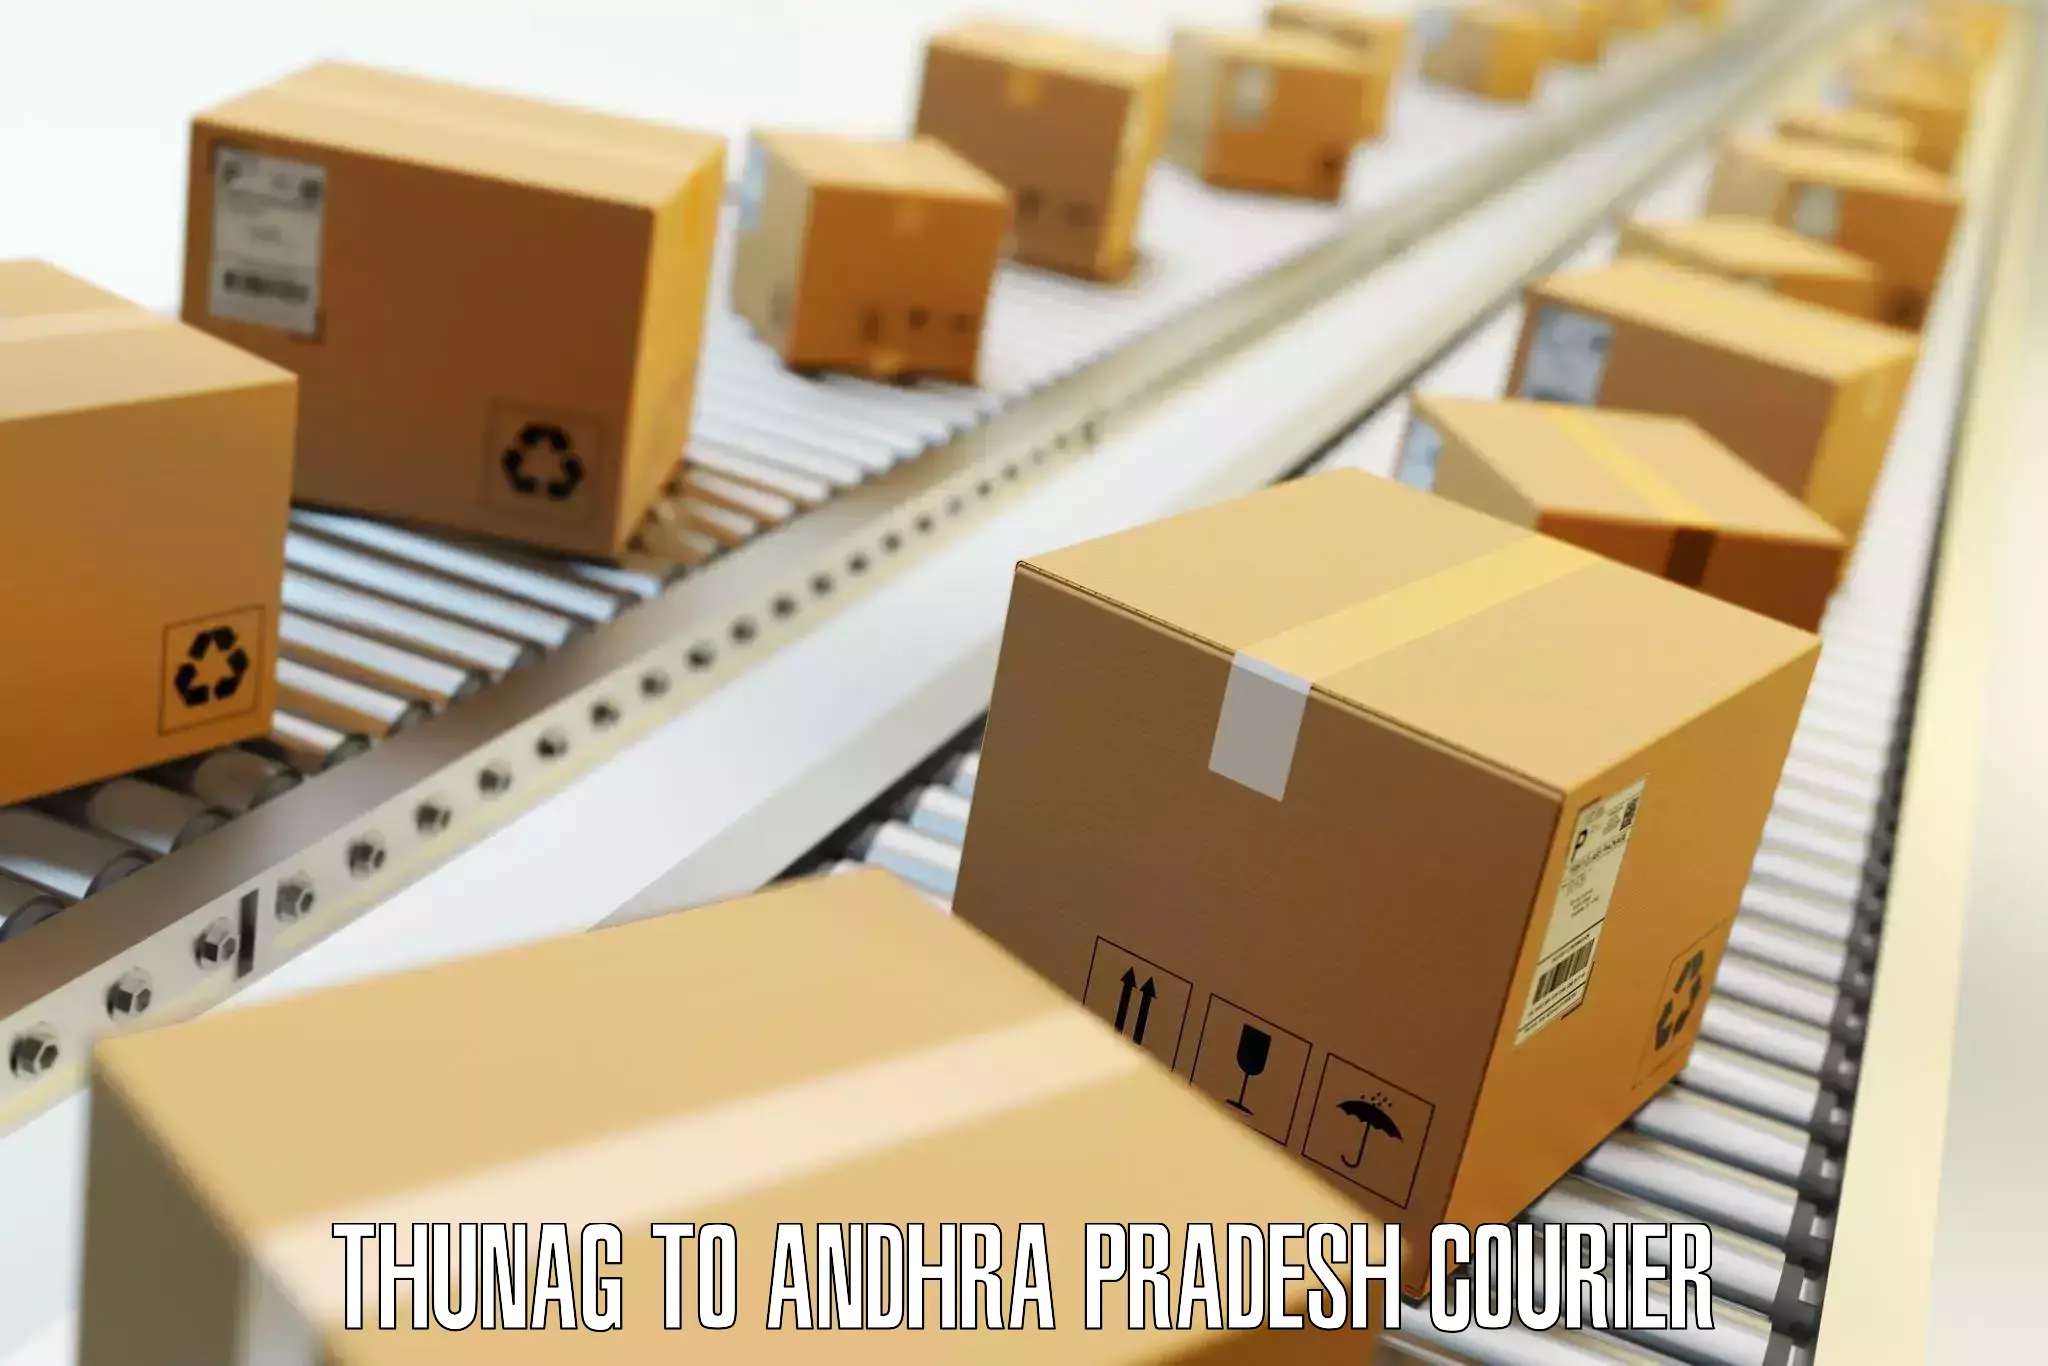 Luggage transfer service Thunag to Andhra Pradesh